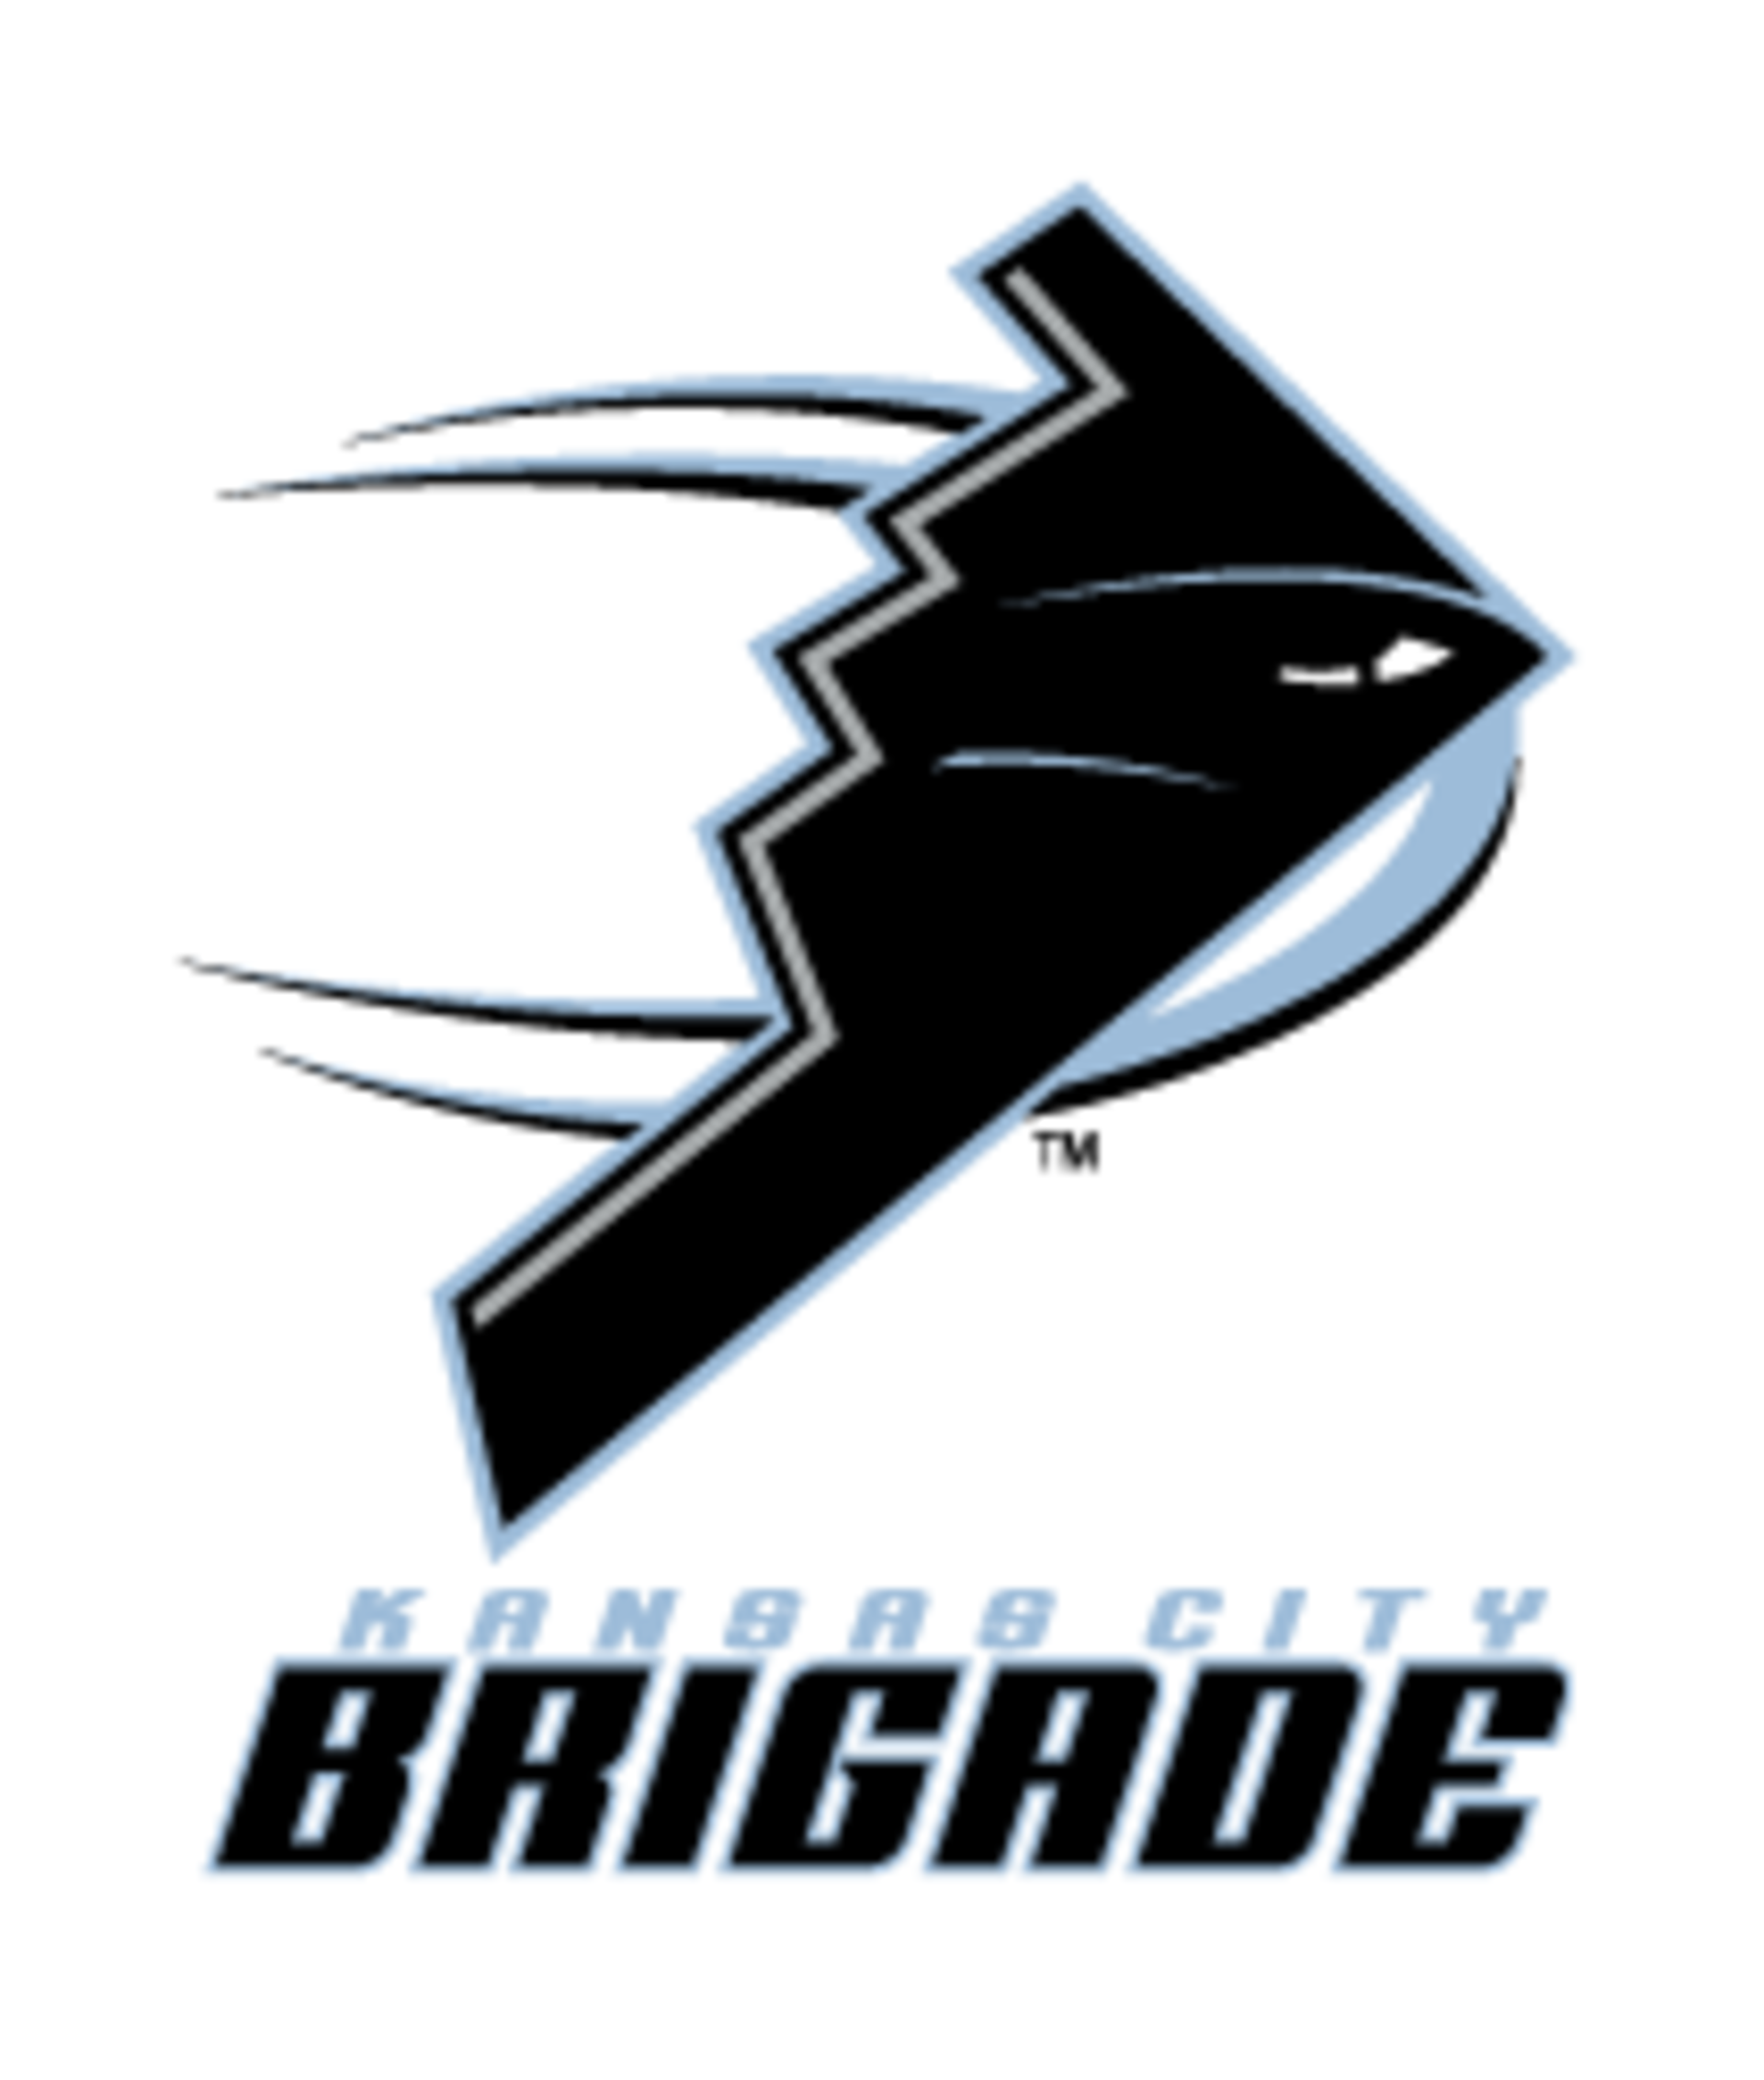 Boys Brigade png images | Klipartz